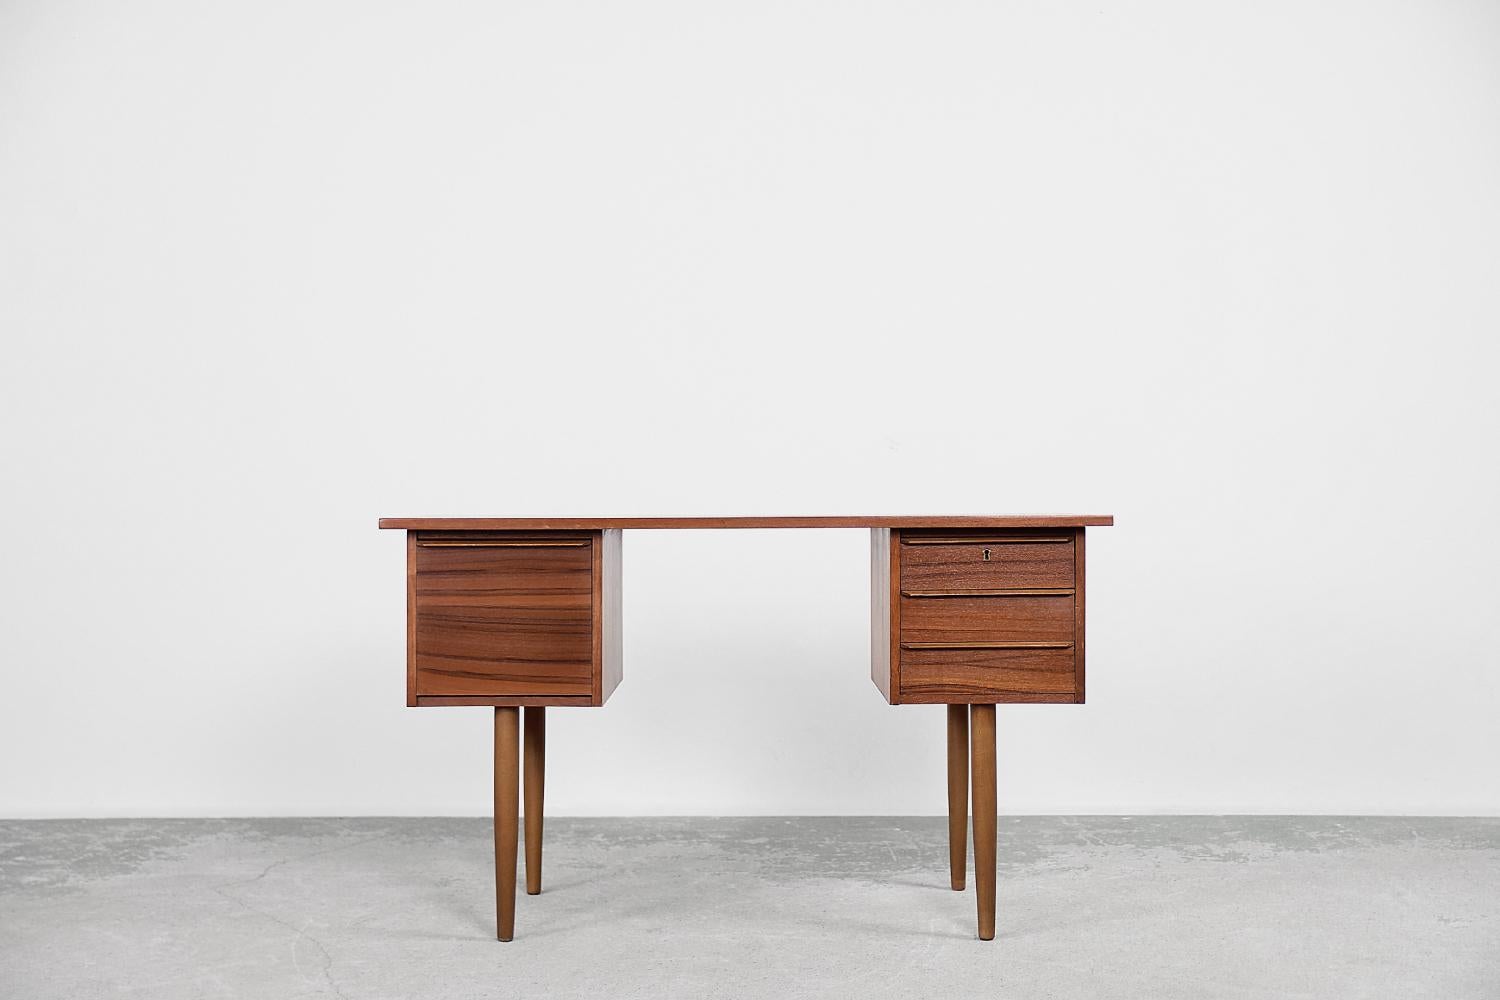 Ce bureau classique a été fabriqué en Suède dans les années 1960. Il a été réalisé en bois de teck dans une teinte brune chaude, avec des détails de grain visibles. Le bureau comporte trois petits tiroirs plats fermés par une clé d'un côté et un